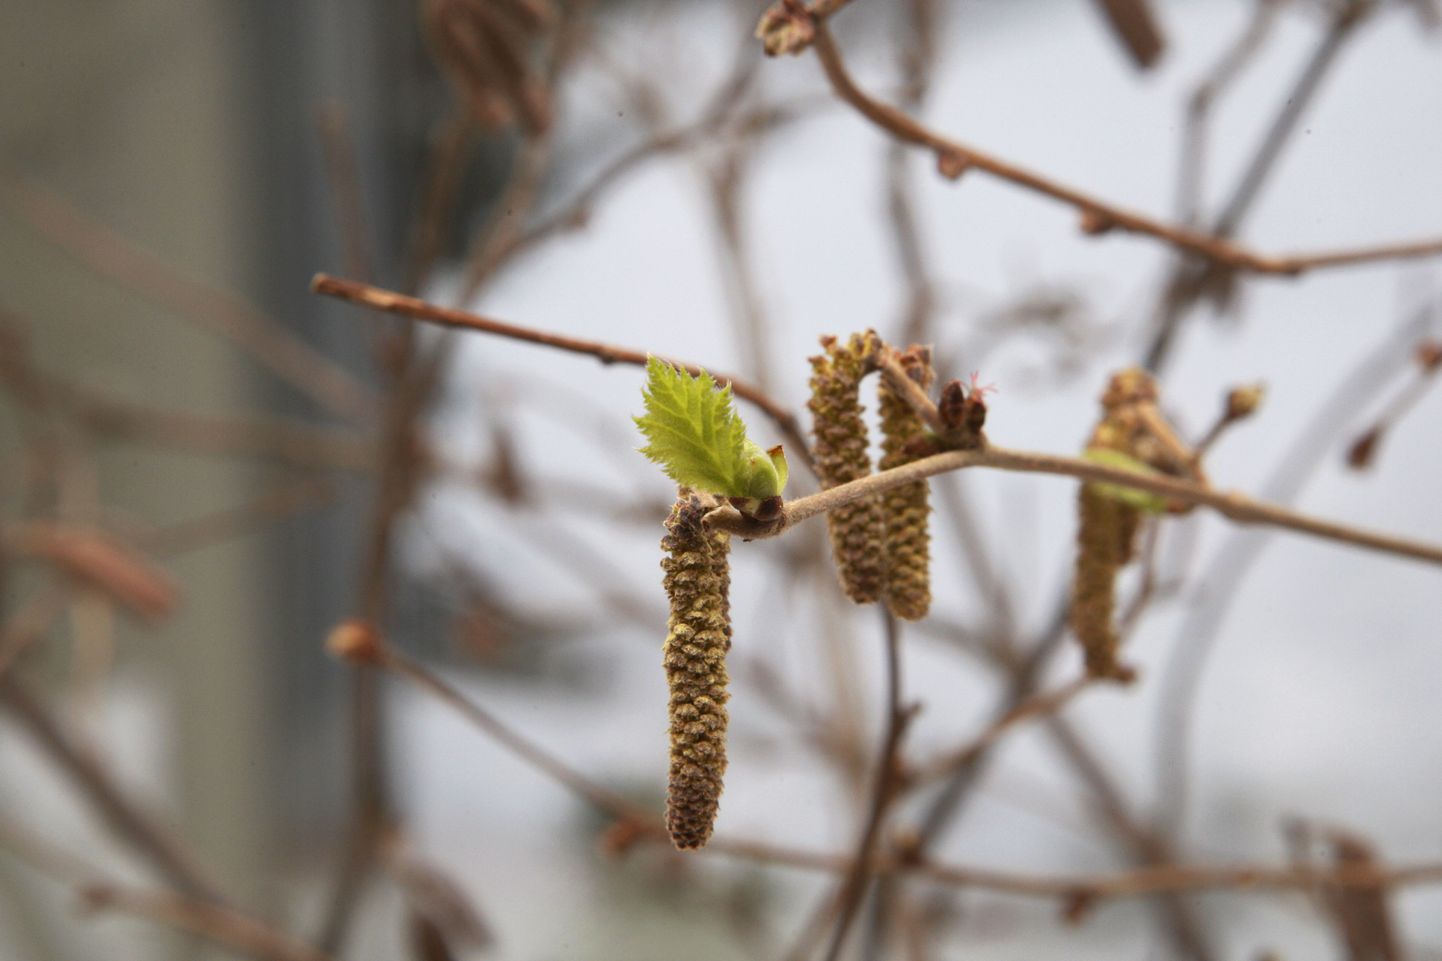 Praegu võib selgeid kevademärke näha Tartu botaanikaaias, kus on avatud näitus «Lehtpuud kevade ootel».
Pildil harilik sarapuu.